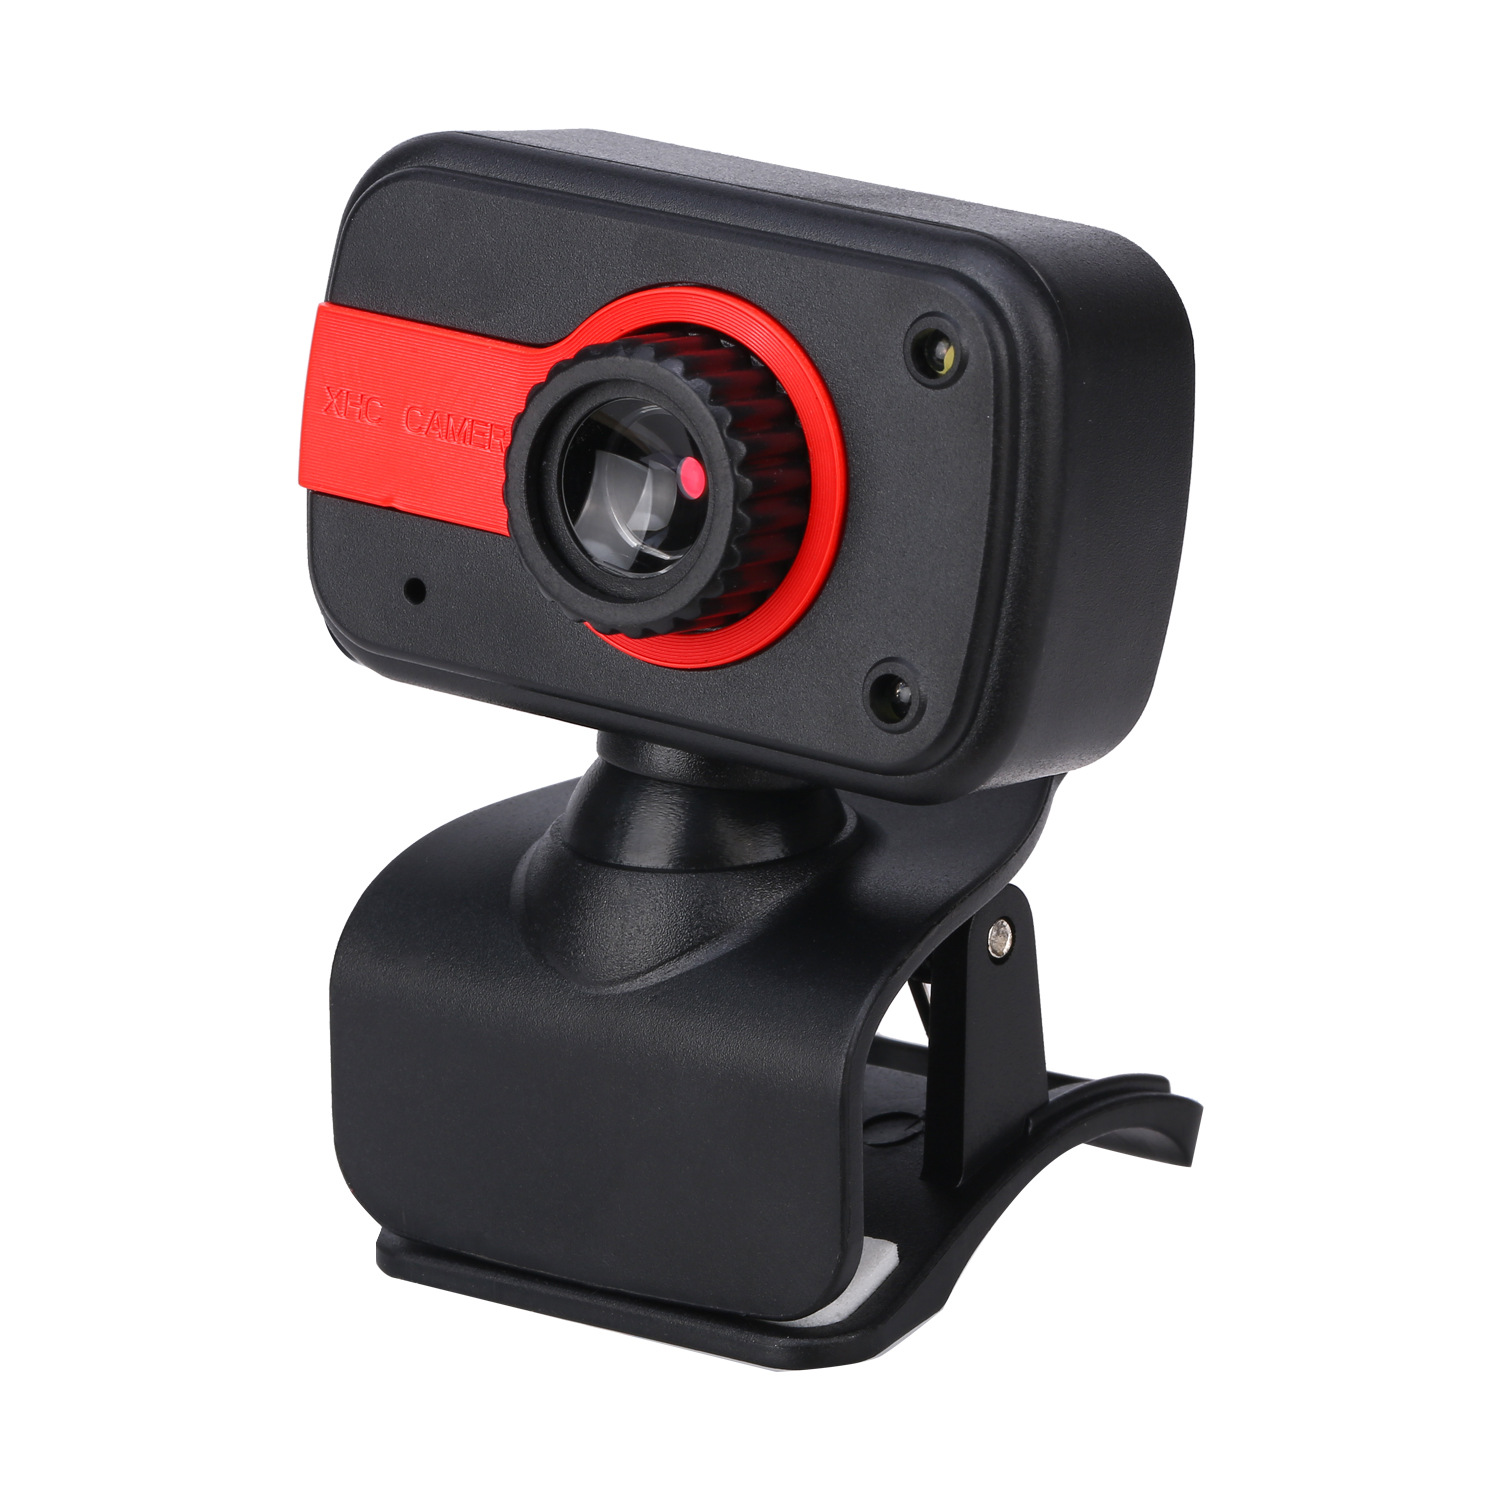 Webcam Hd Cổng Usb Kèm Micro Cho Máy Tính